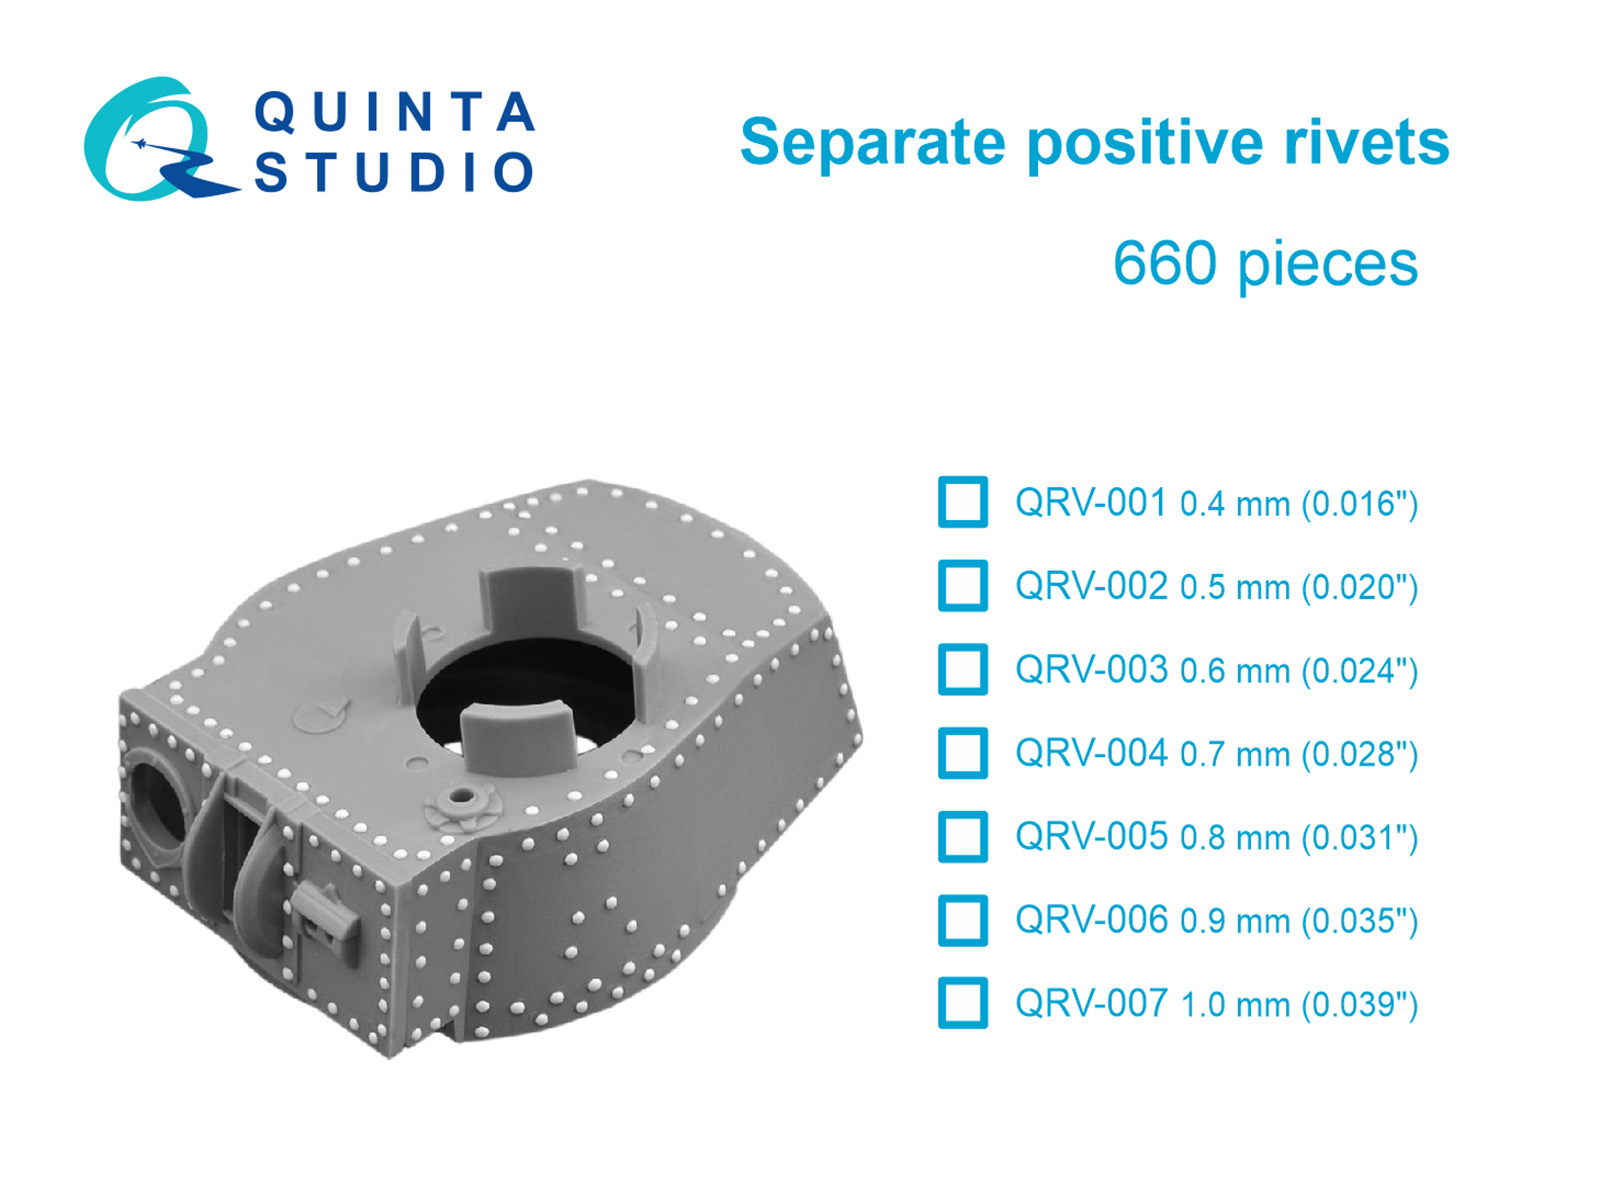 Separate positive rivets, 0.5mm (0.020"), 660 pcs